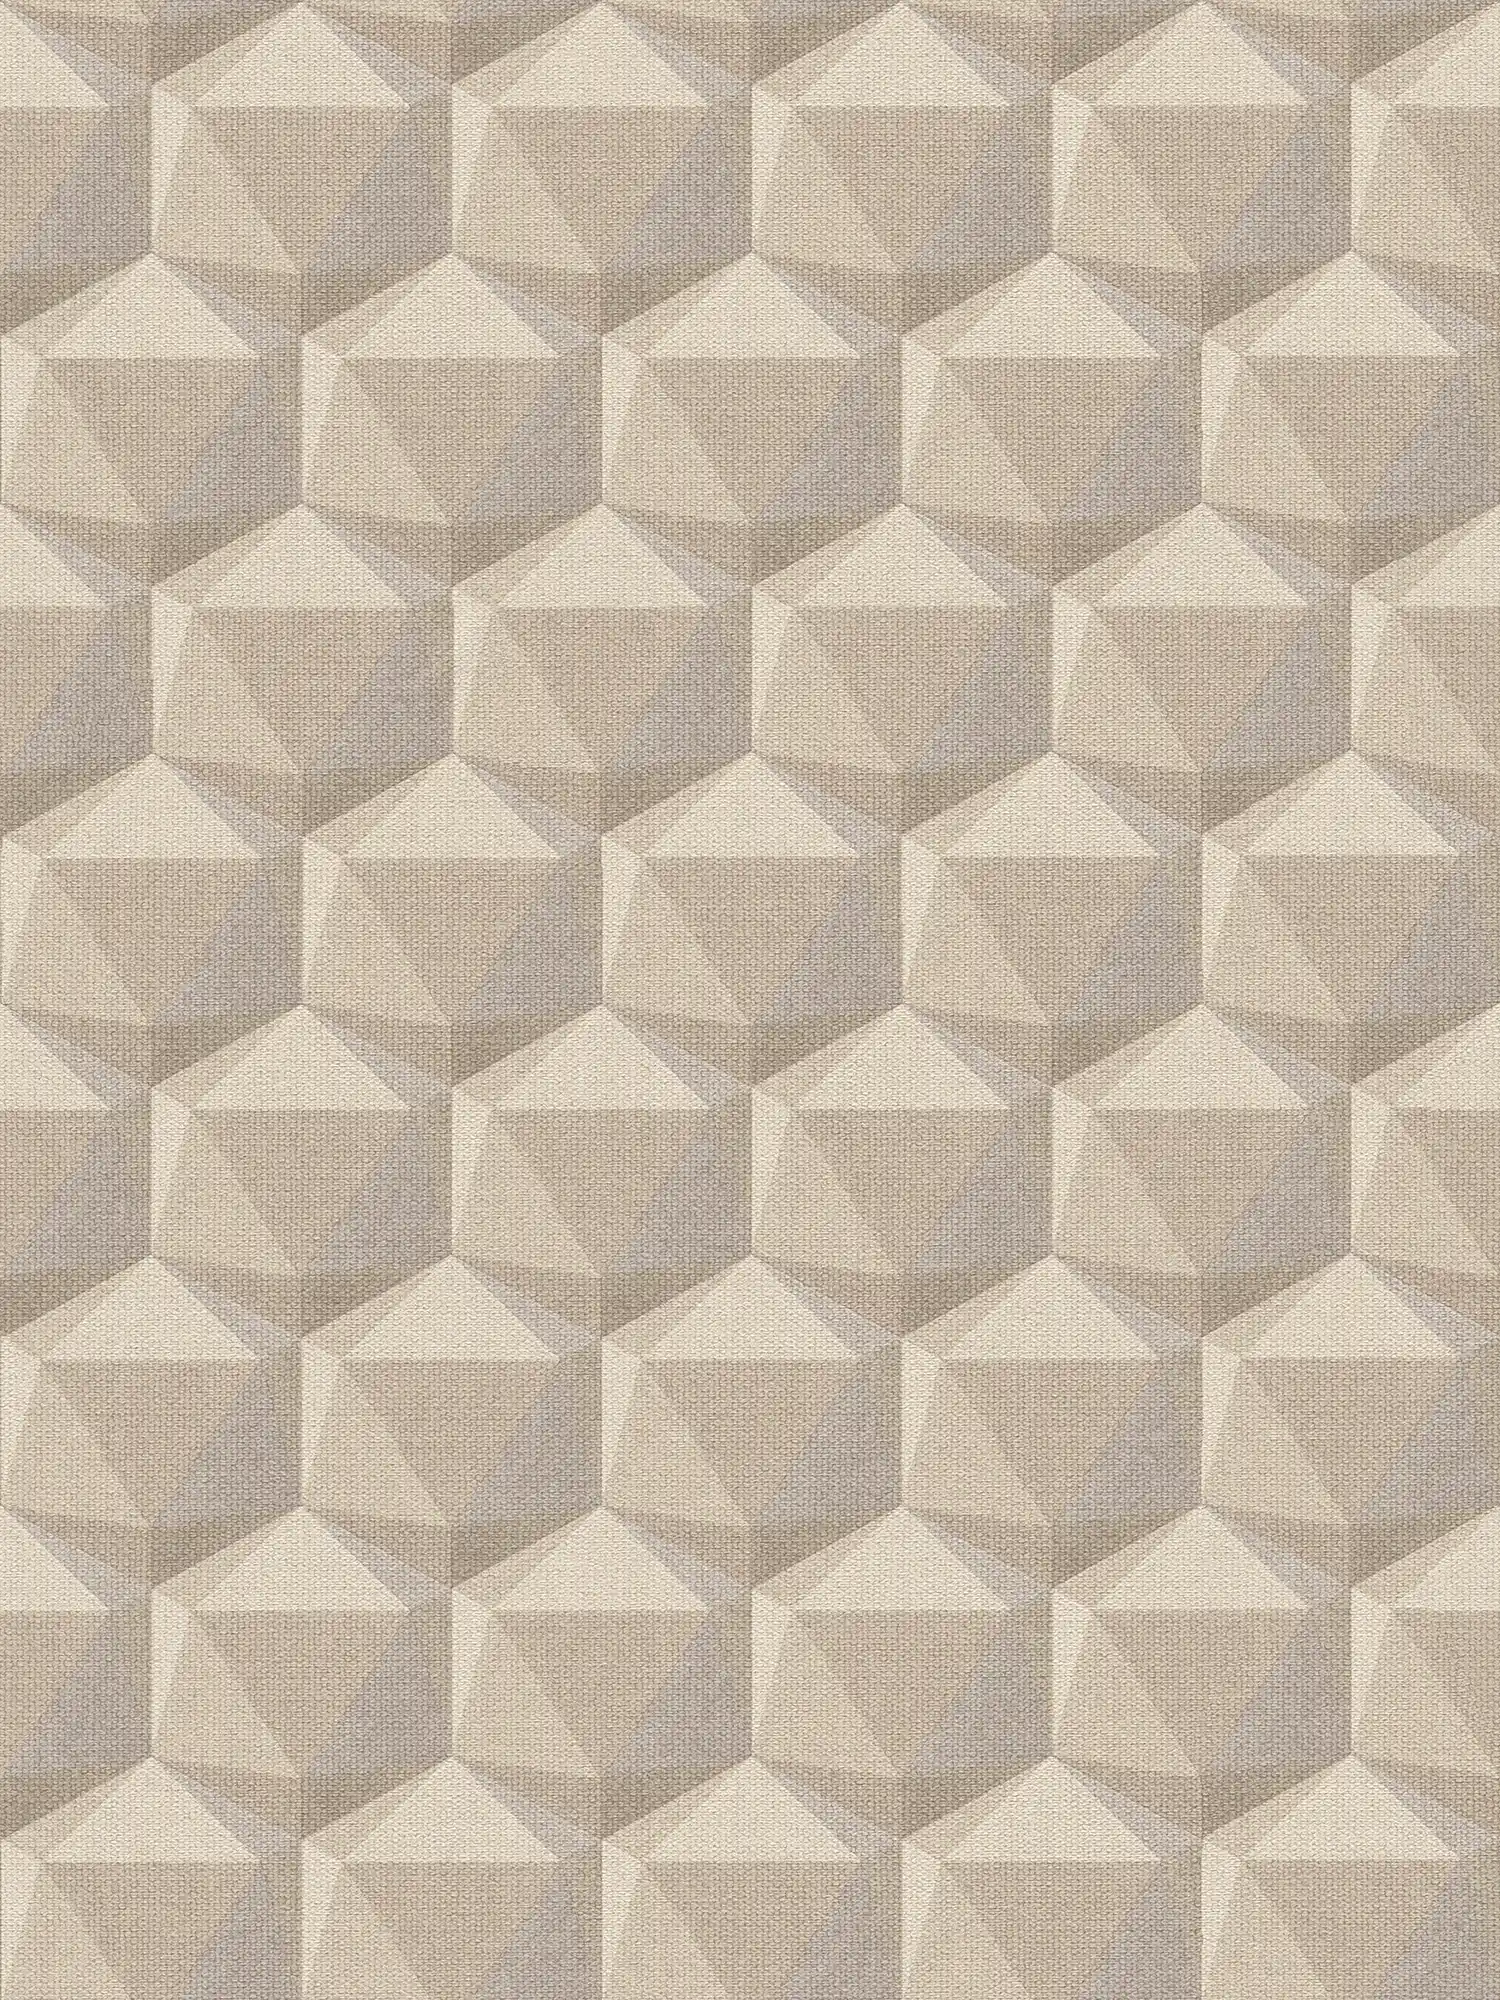 Pattern wallpaper with 3D design & linen look - beige, grey
